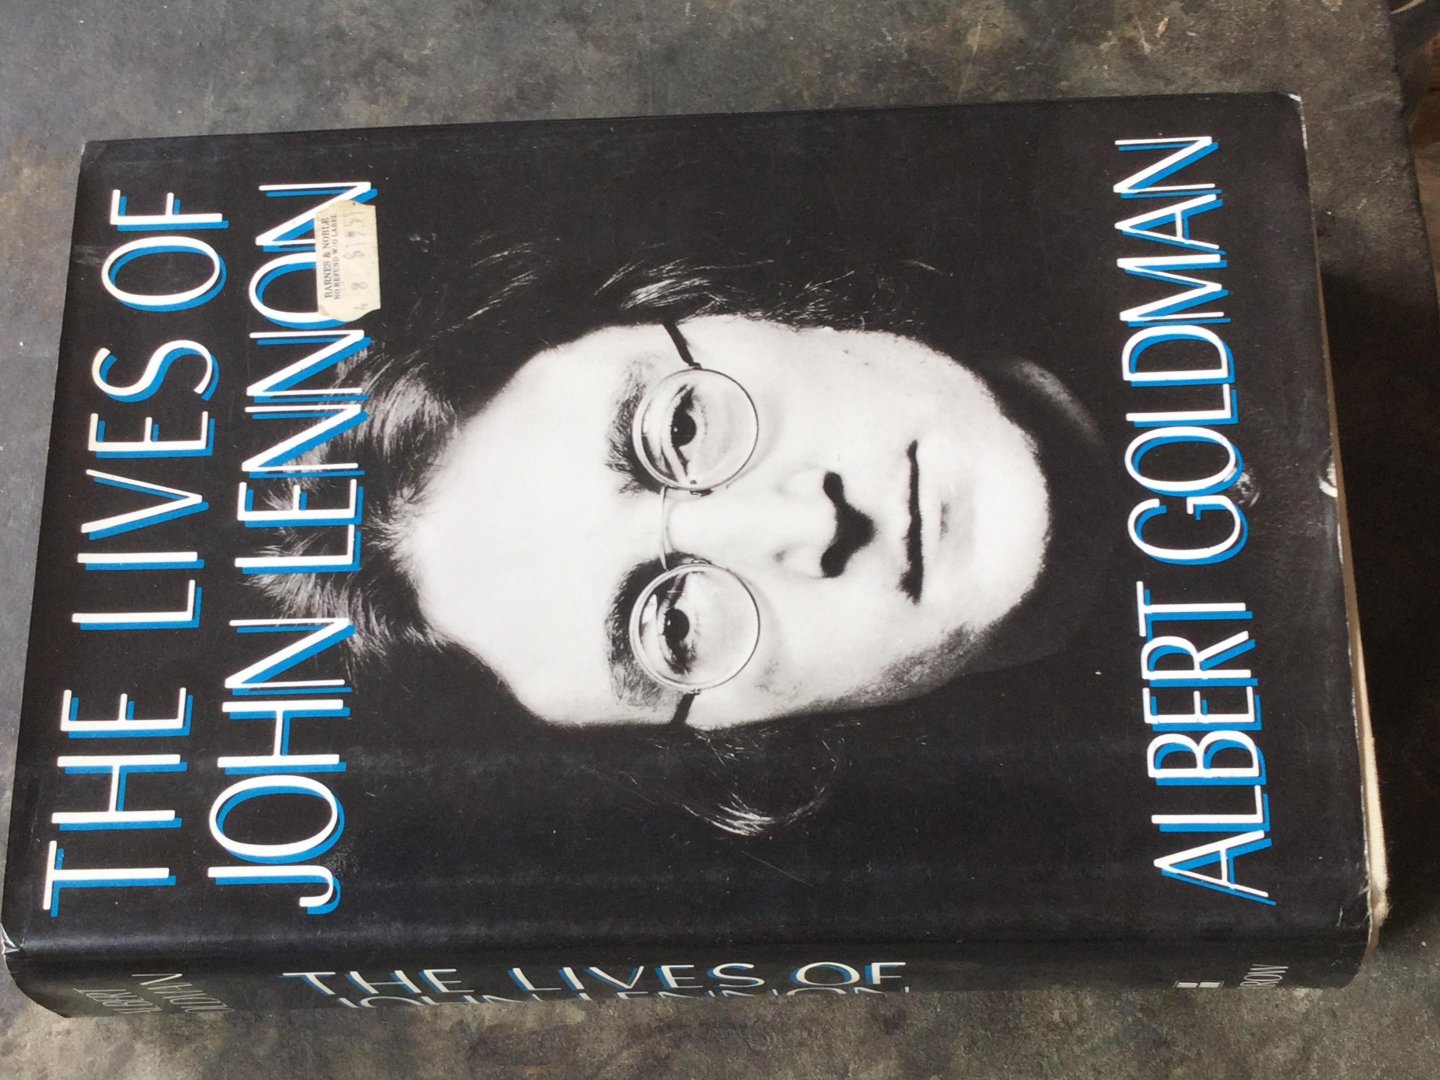 Goldman,Albert - The lives of John Lennon